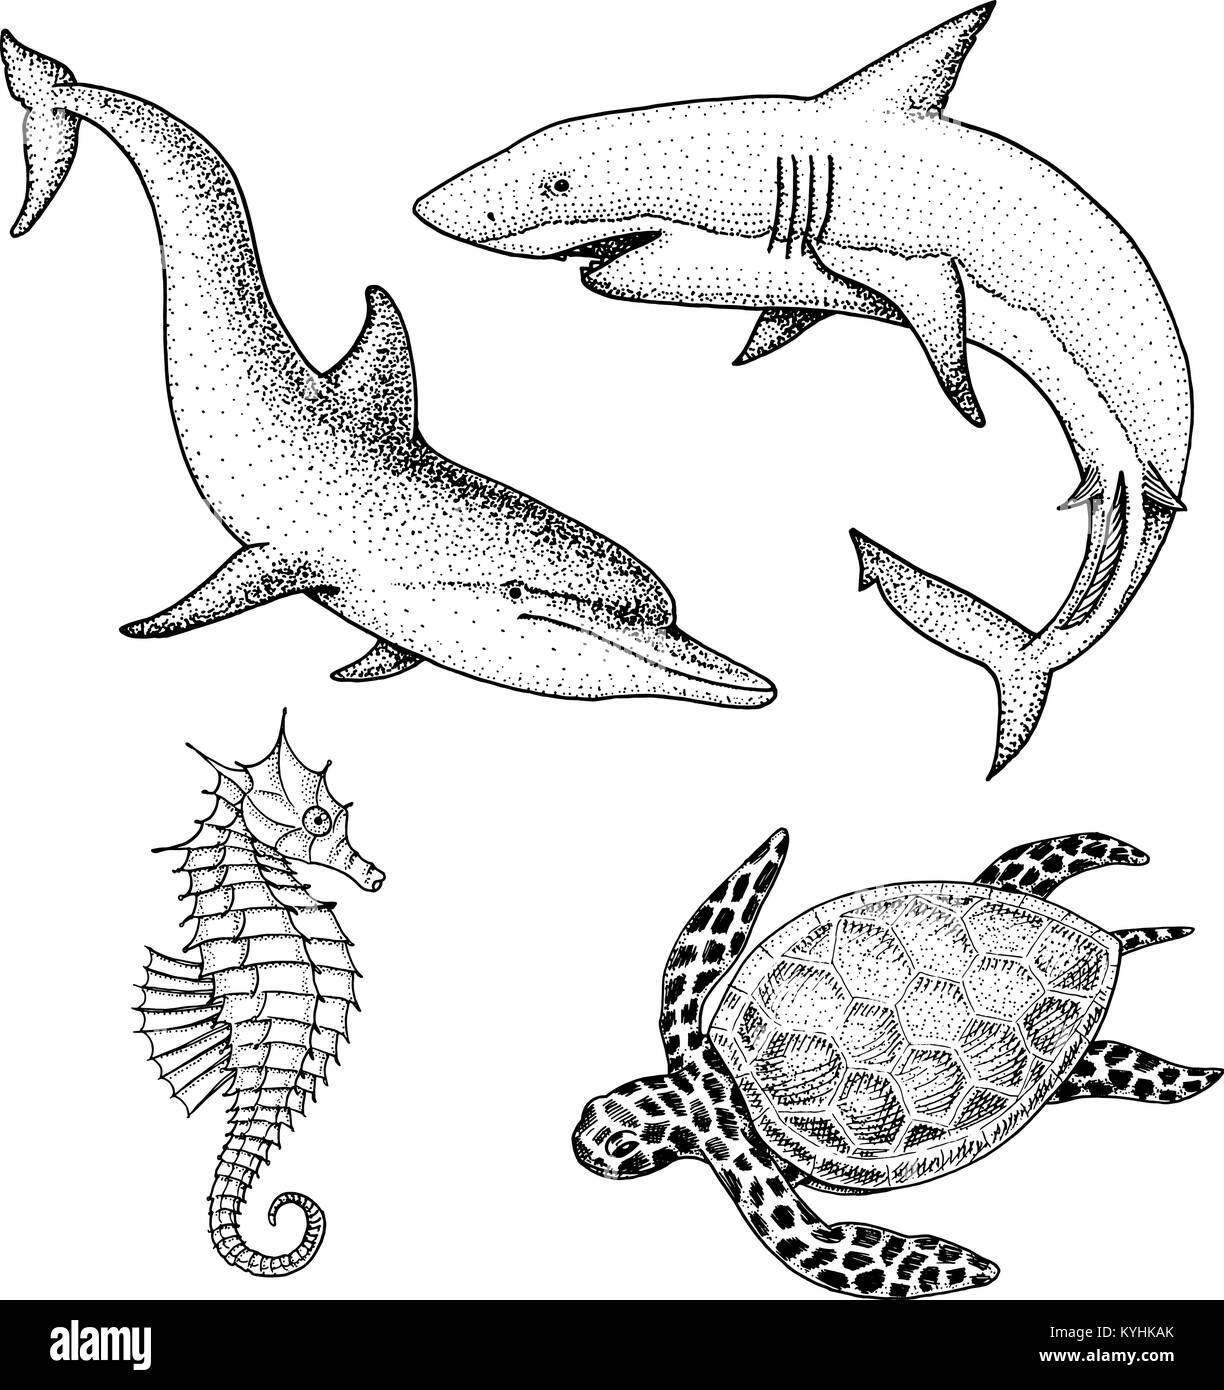 Meer Kreatur Delphin und weiße Hai, cheloniidae oder Grüne Schildkröte und Seepferdchen. graviert Hand in alte Skizze gezeichnet, Vintage Style. nautischen oder Marine, Monster oder Fisch. Tiere, die in den Ozean. Stock Vektor